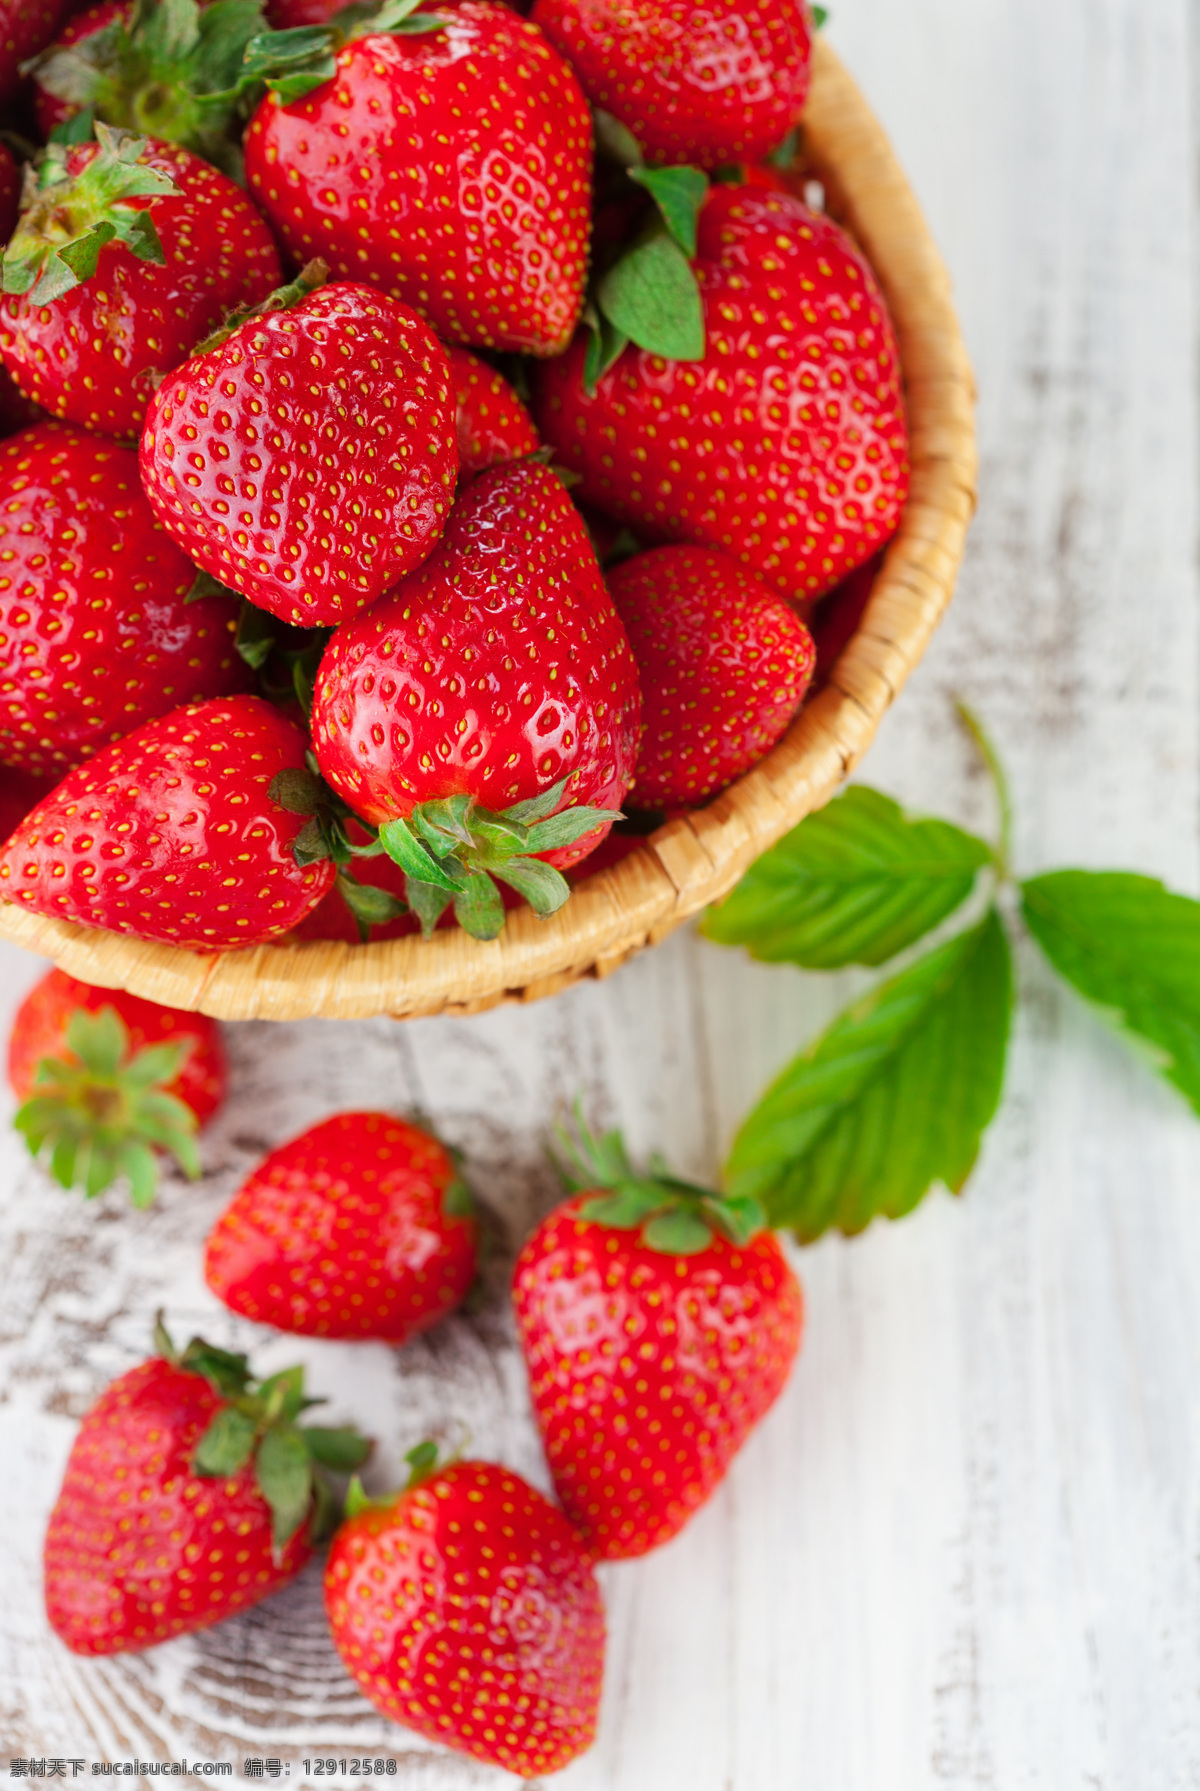 成熟的草莓 新鲜草莓 新鲜水果 水果摄影 果实 水果蔬菜 餐饮美食 红色